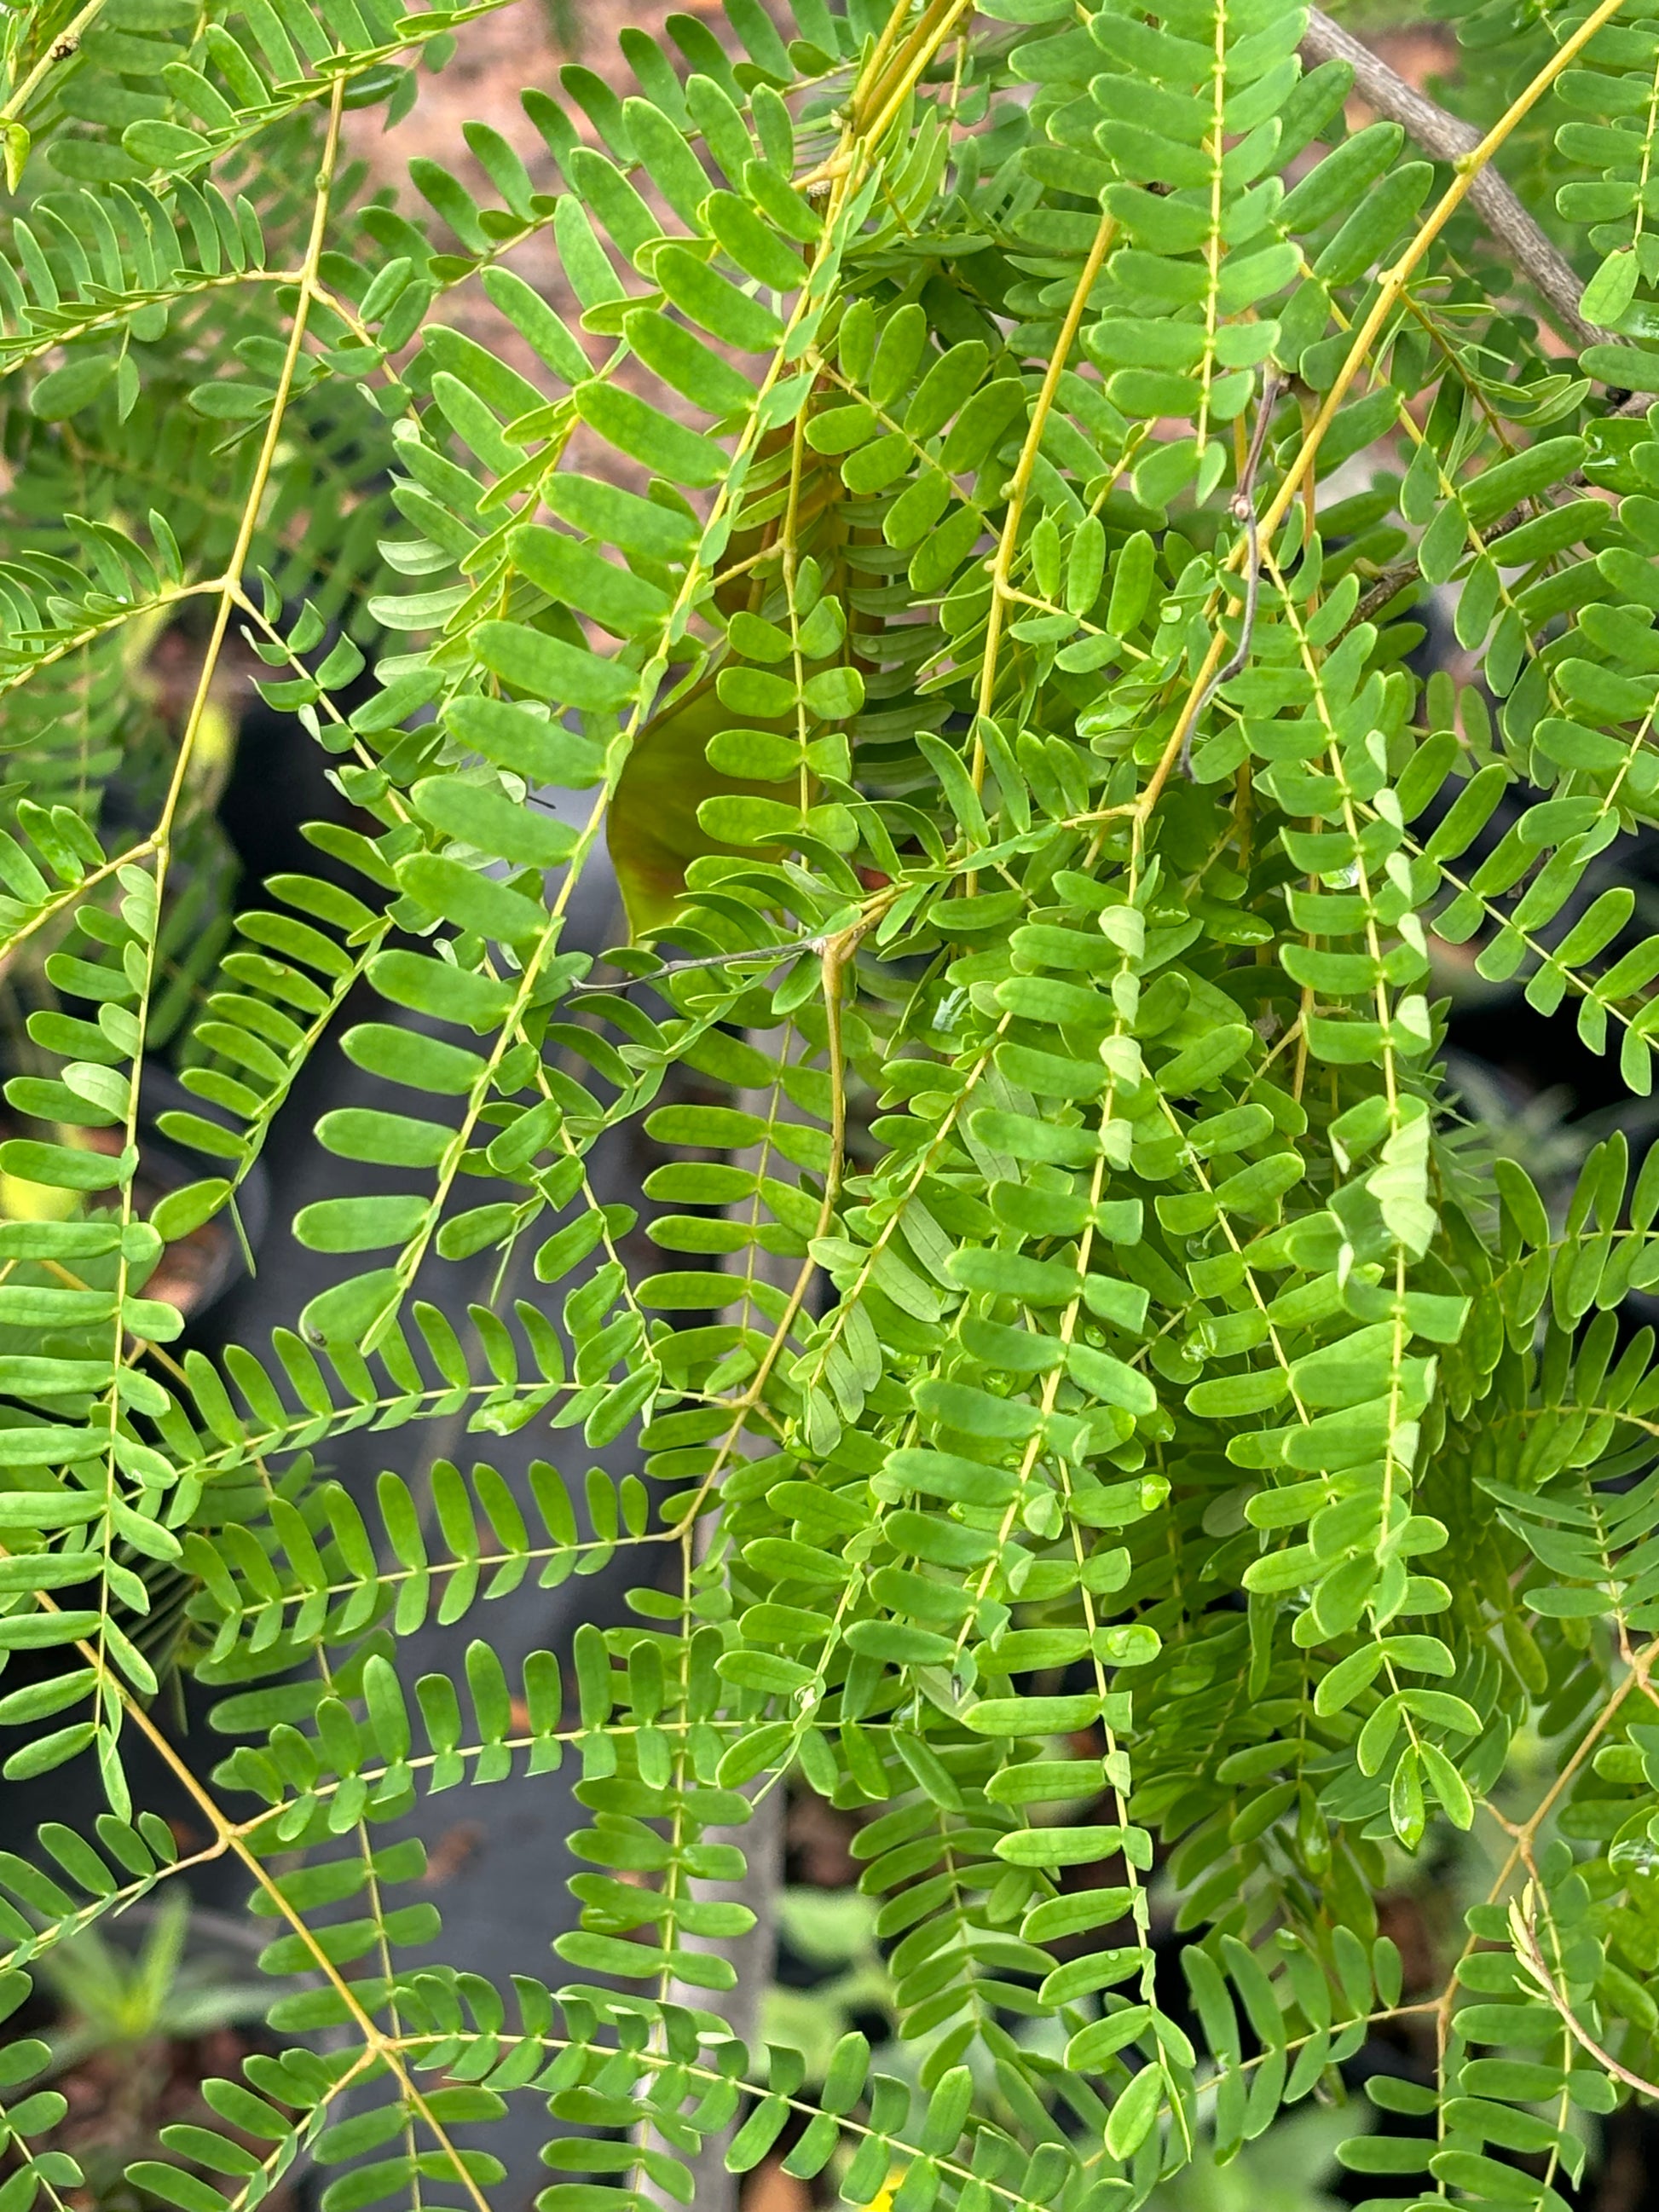 lysiloma latisiliquum leaf is host plant for orange sulphur